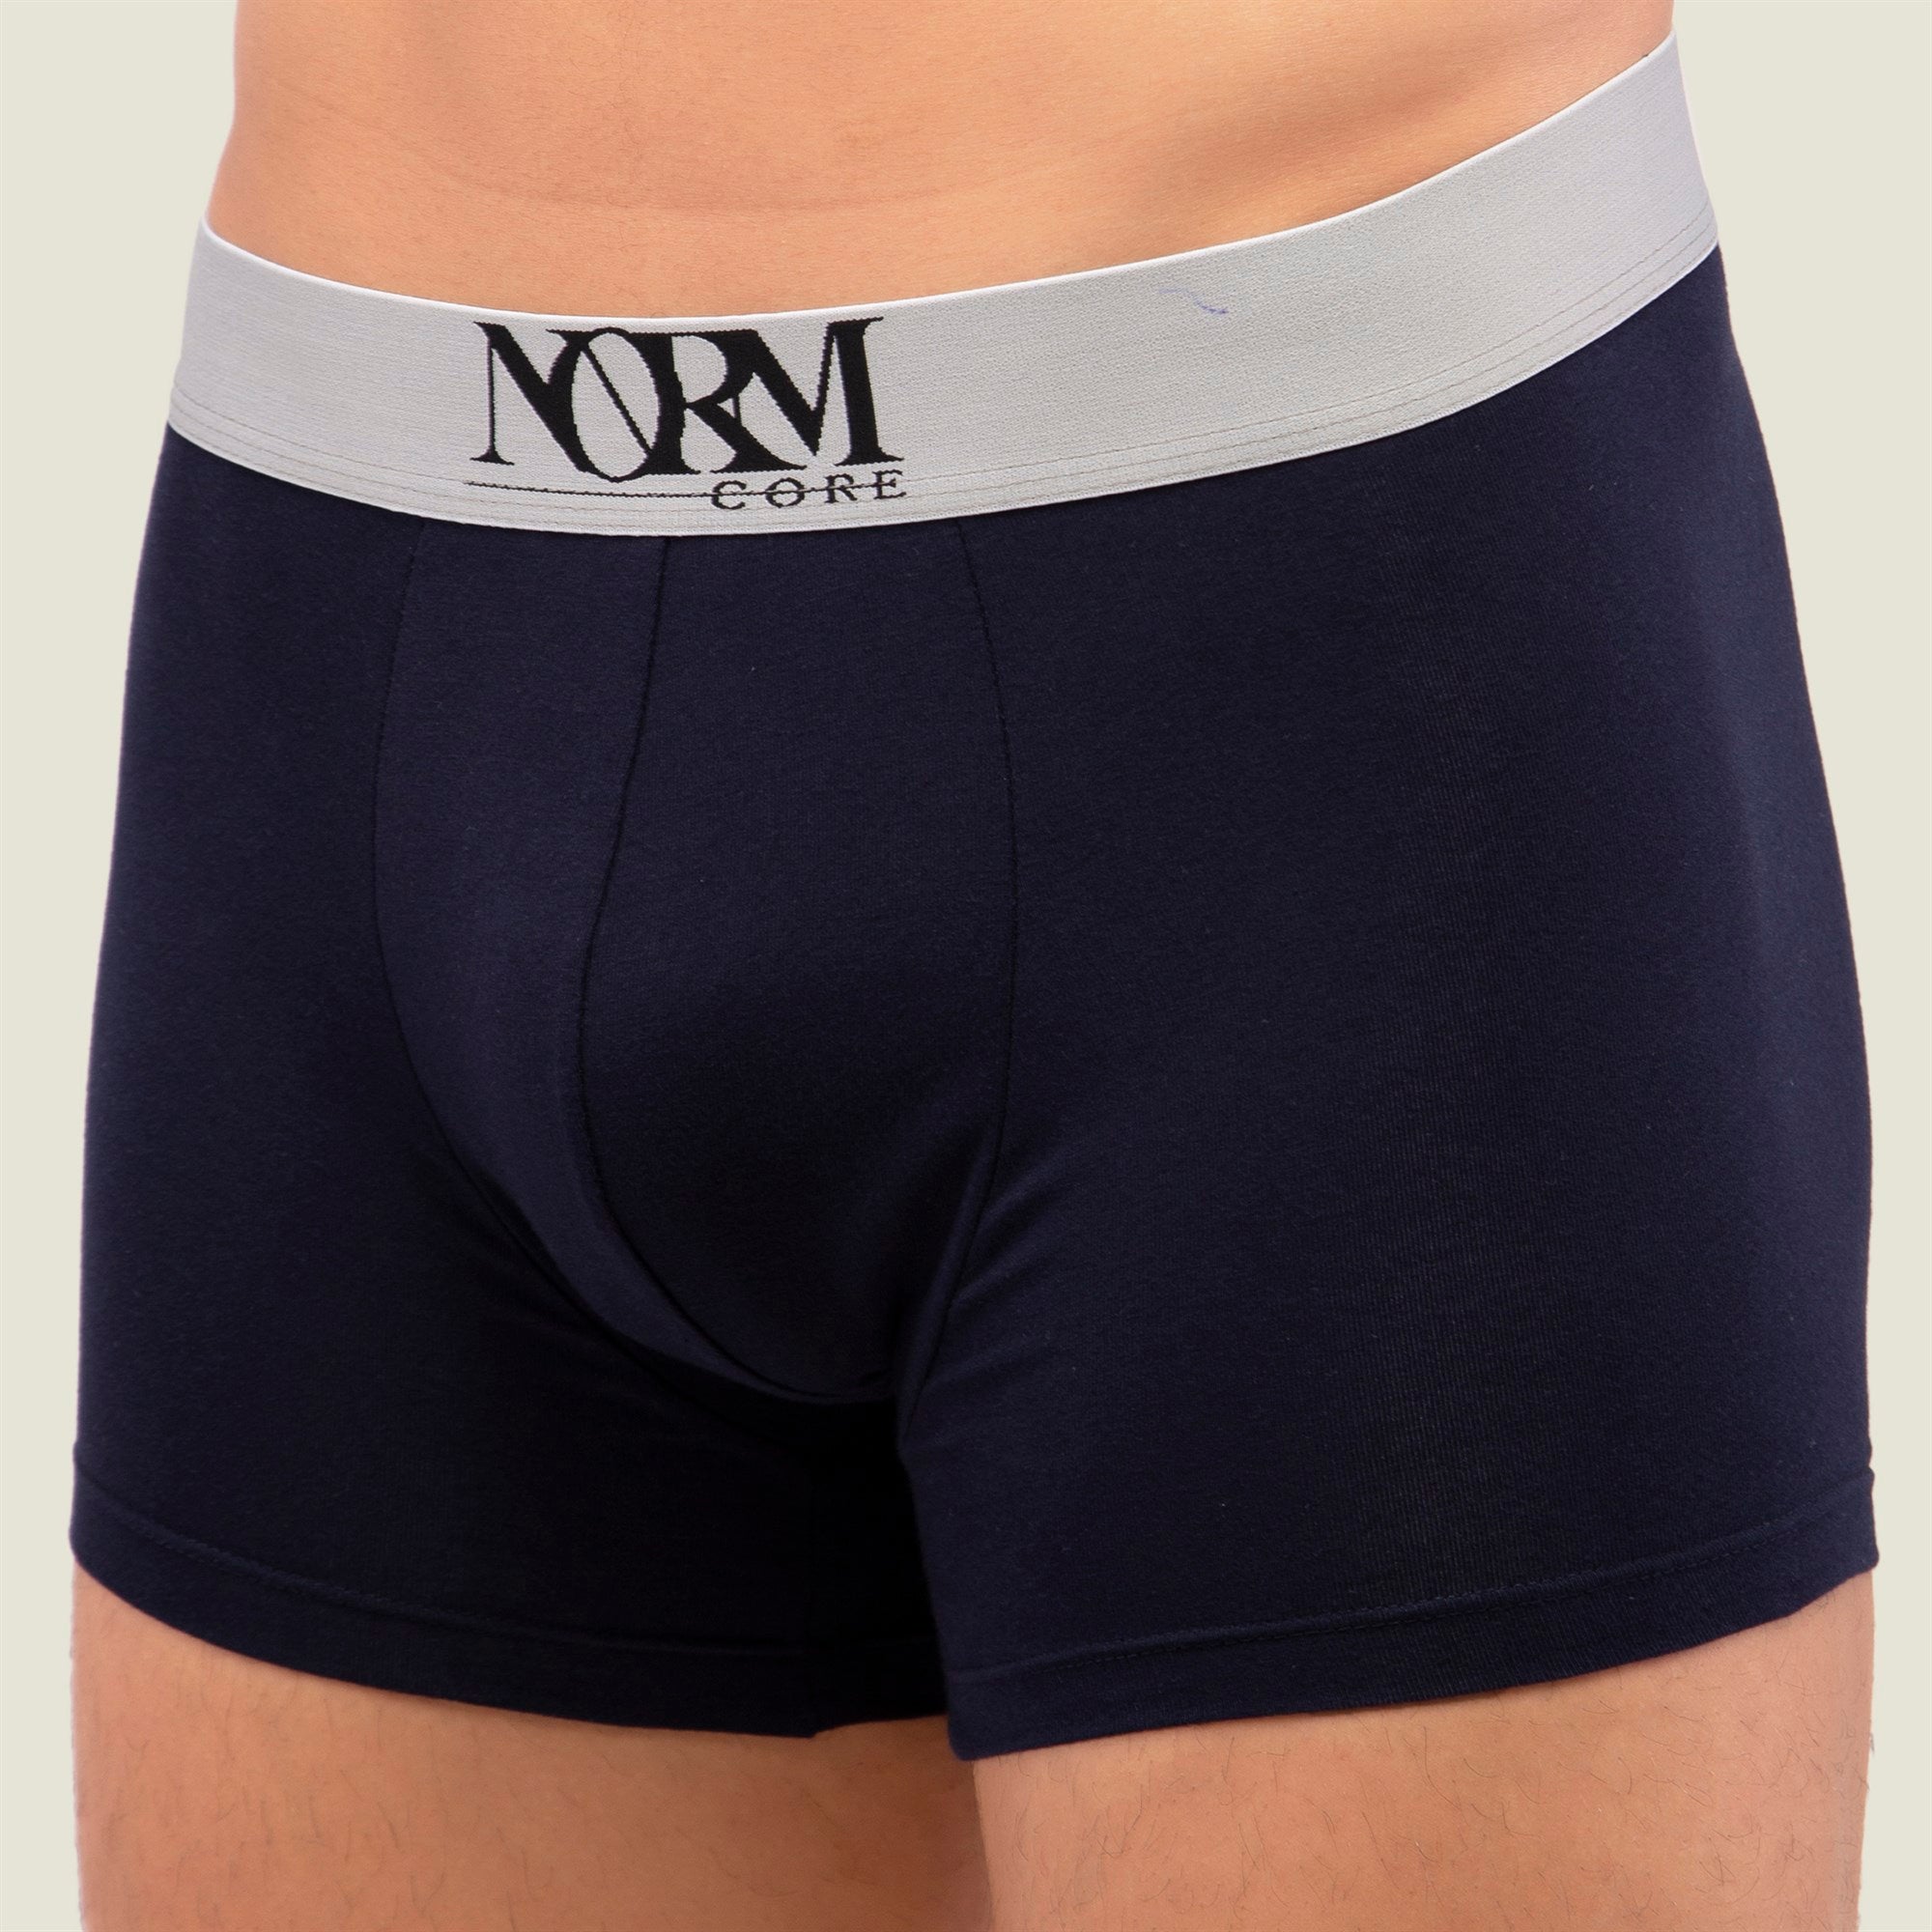 Normcore Cotton Innerwear - Navy Blue Trunk with Silver Waistband Underwear